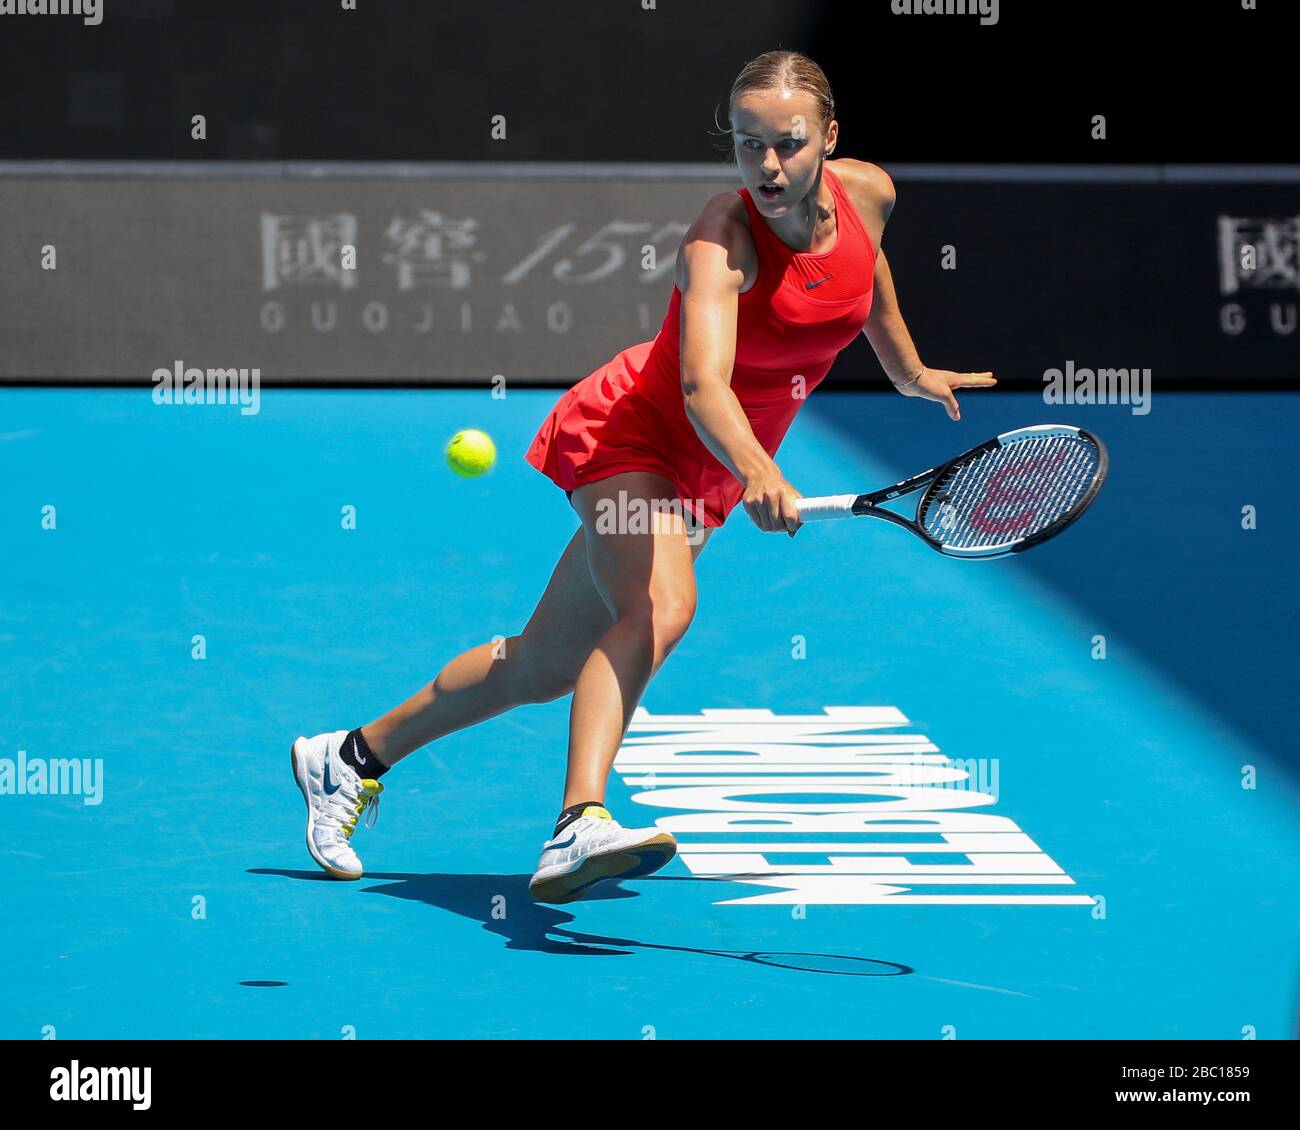 Czech tennis player Anna Karolina Schmiedlova playing a backhand return shot in Australian Open 2020 tennis tournament, Melbourne Park, Melbourne, Vic Stock Photo